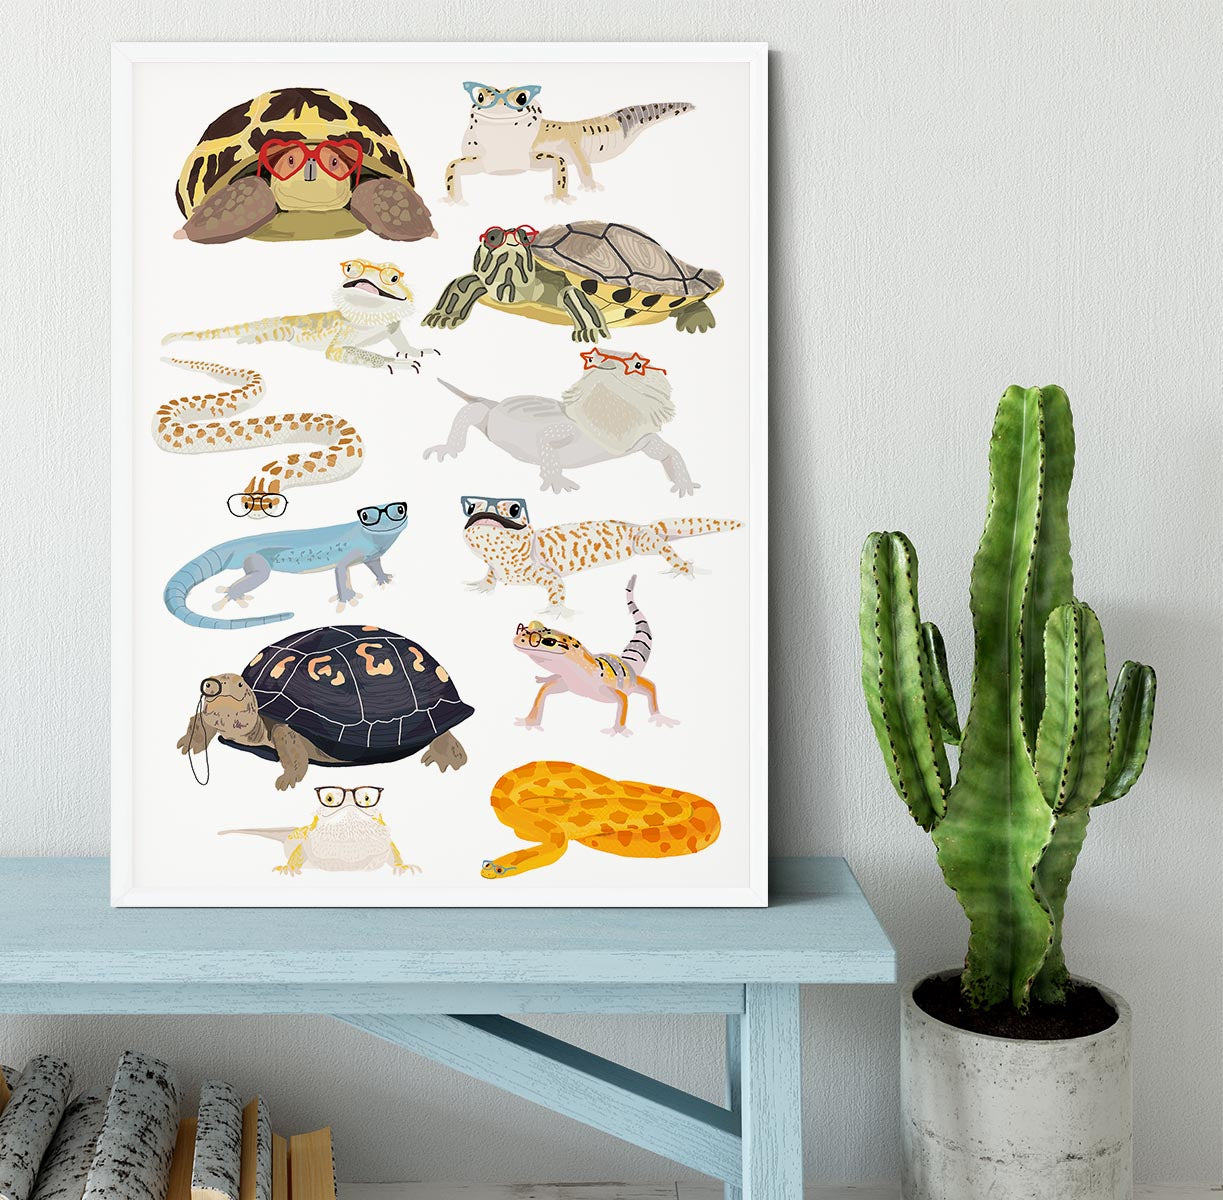 12 Reptiles In Glasses Framed Print - 1x -6